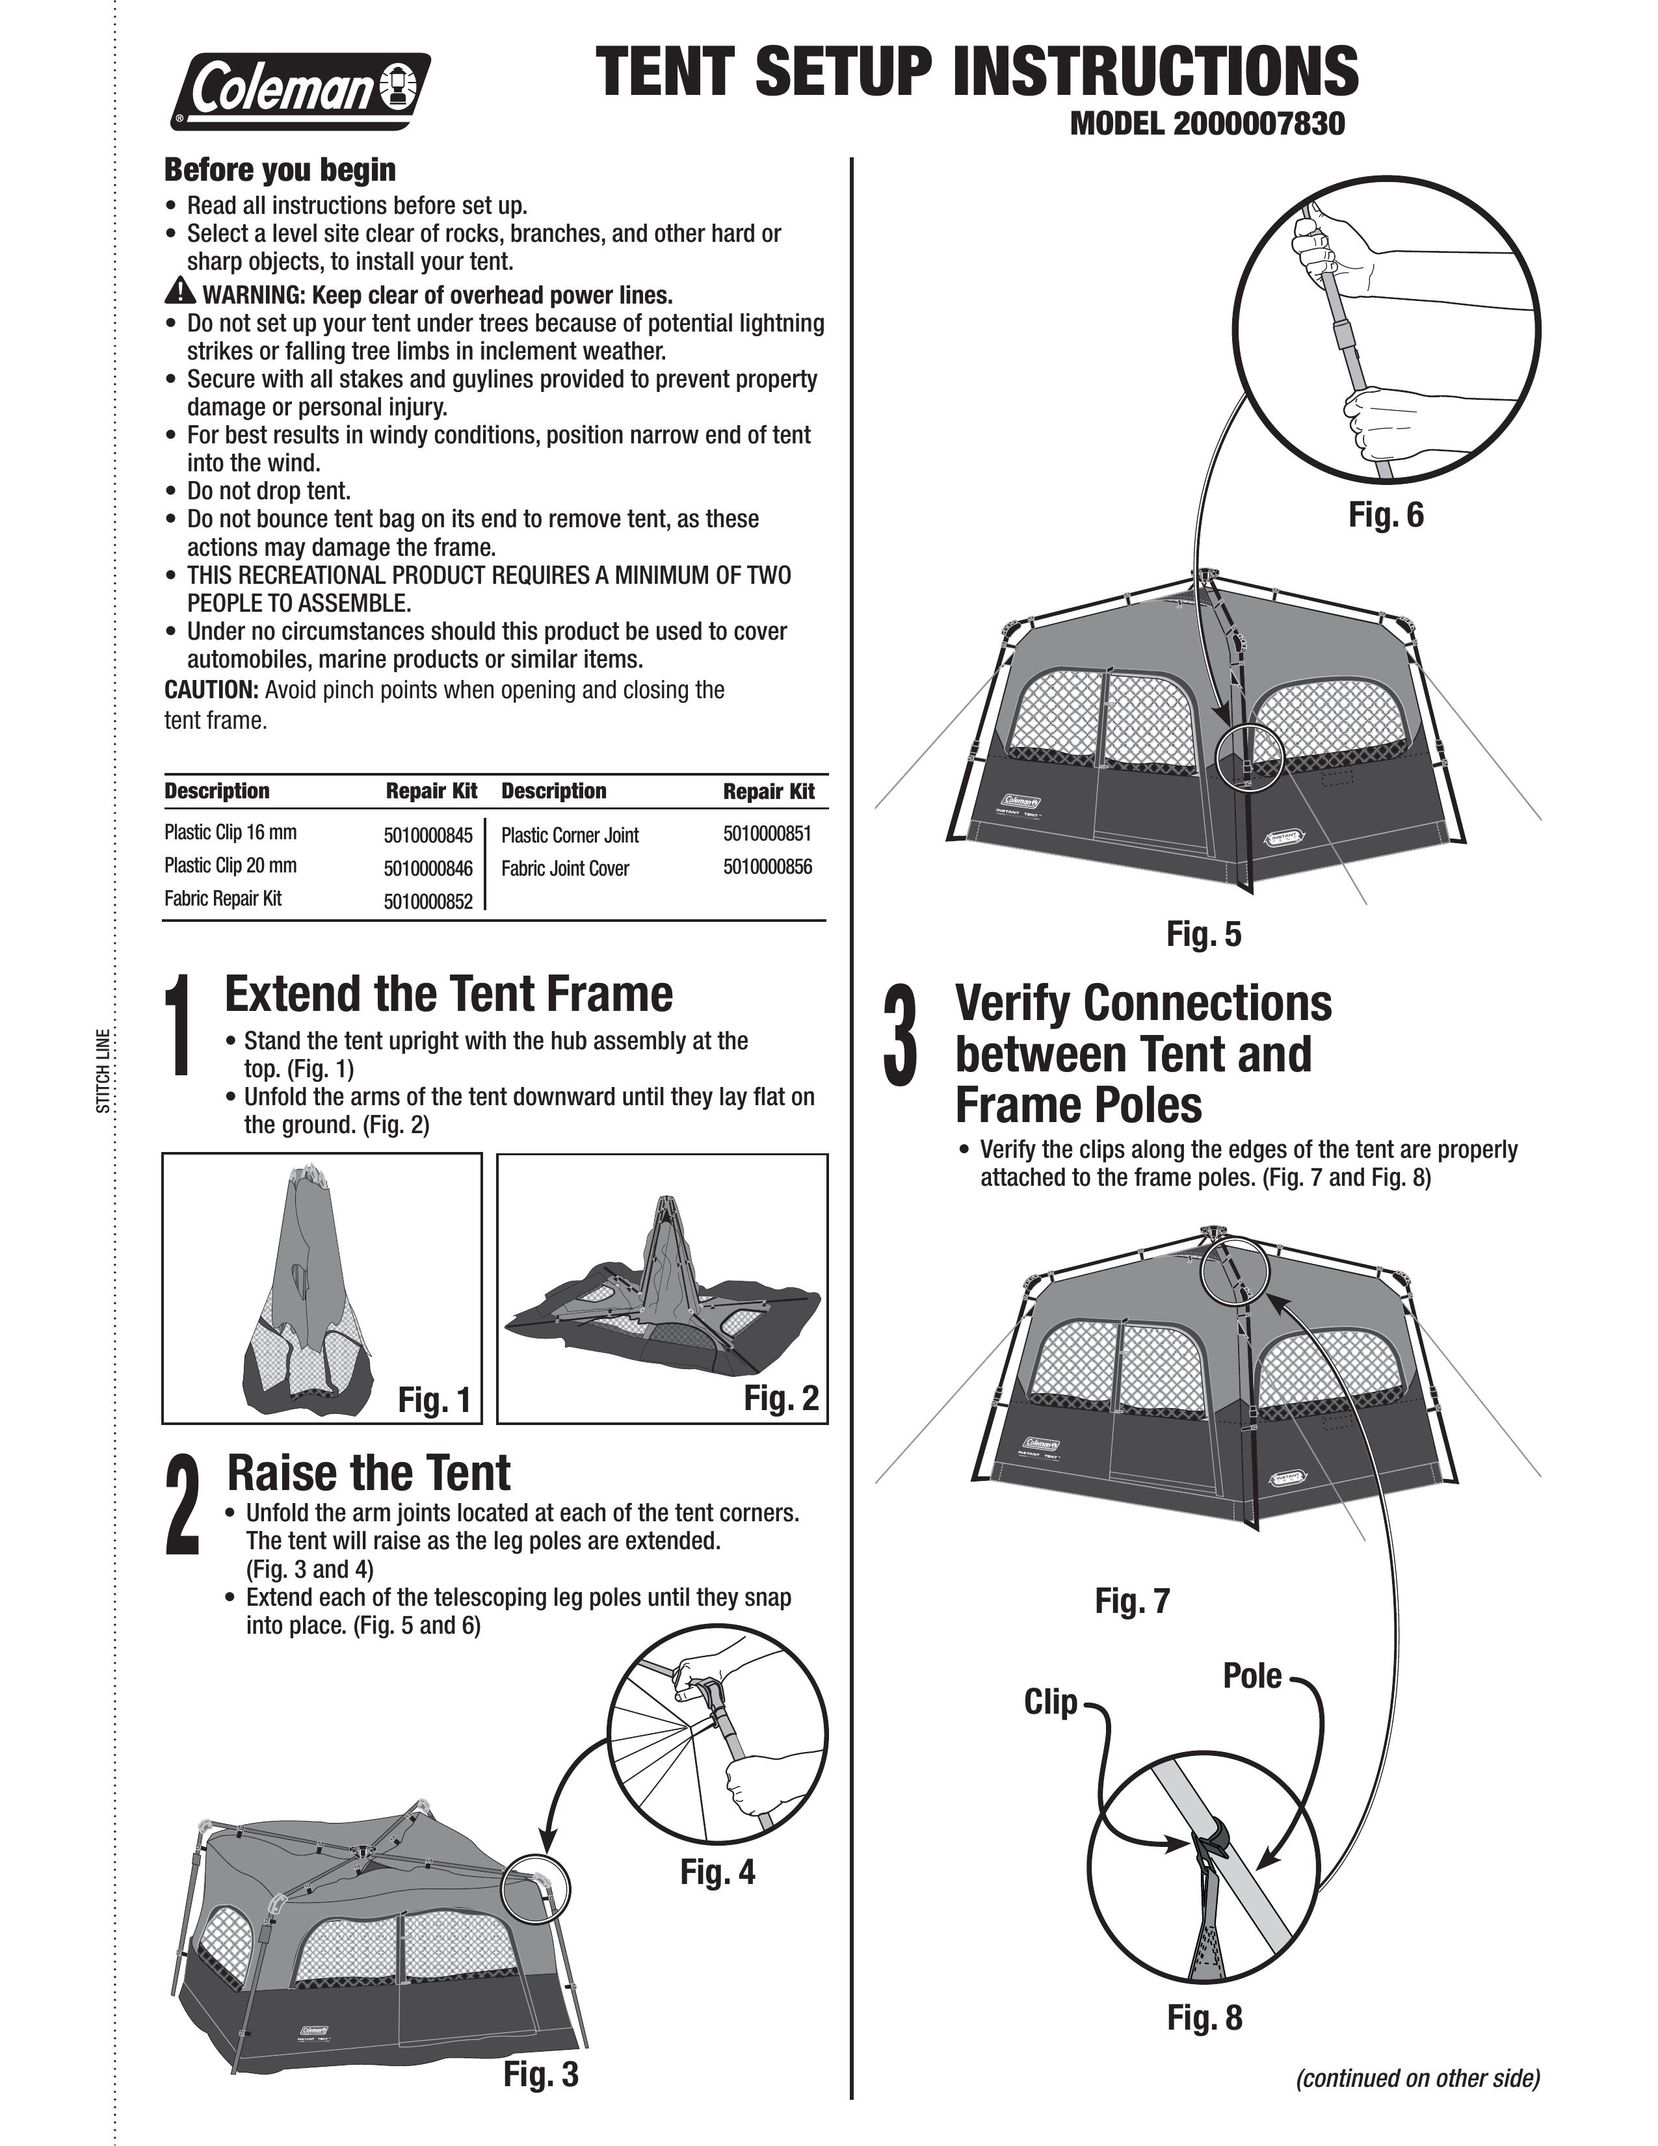 Coleman 2000007830 Tent User Manual